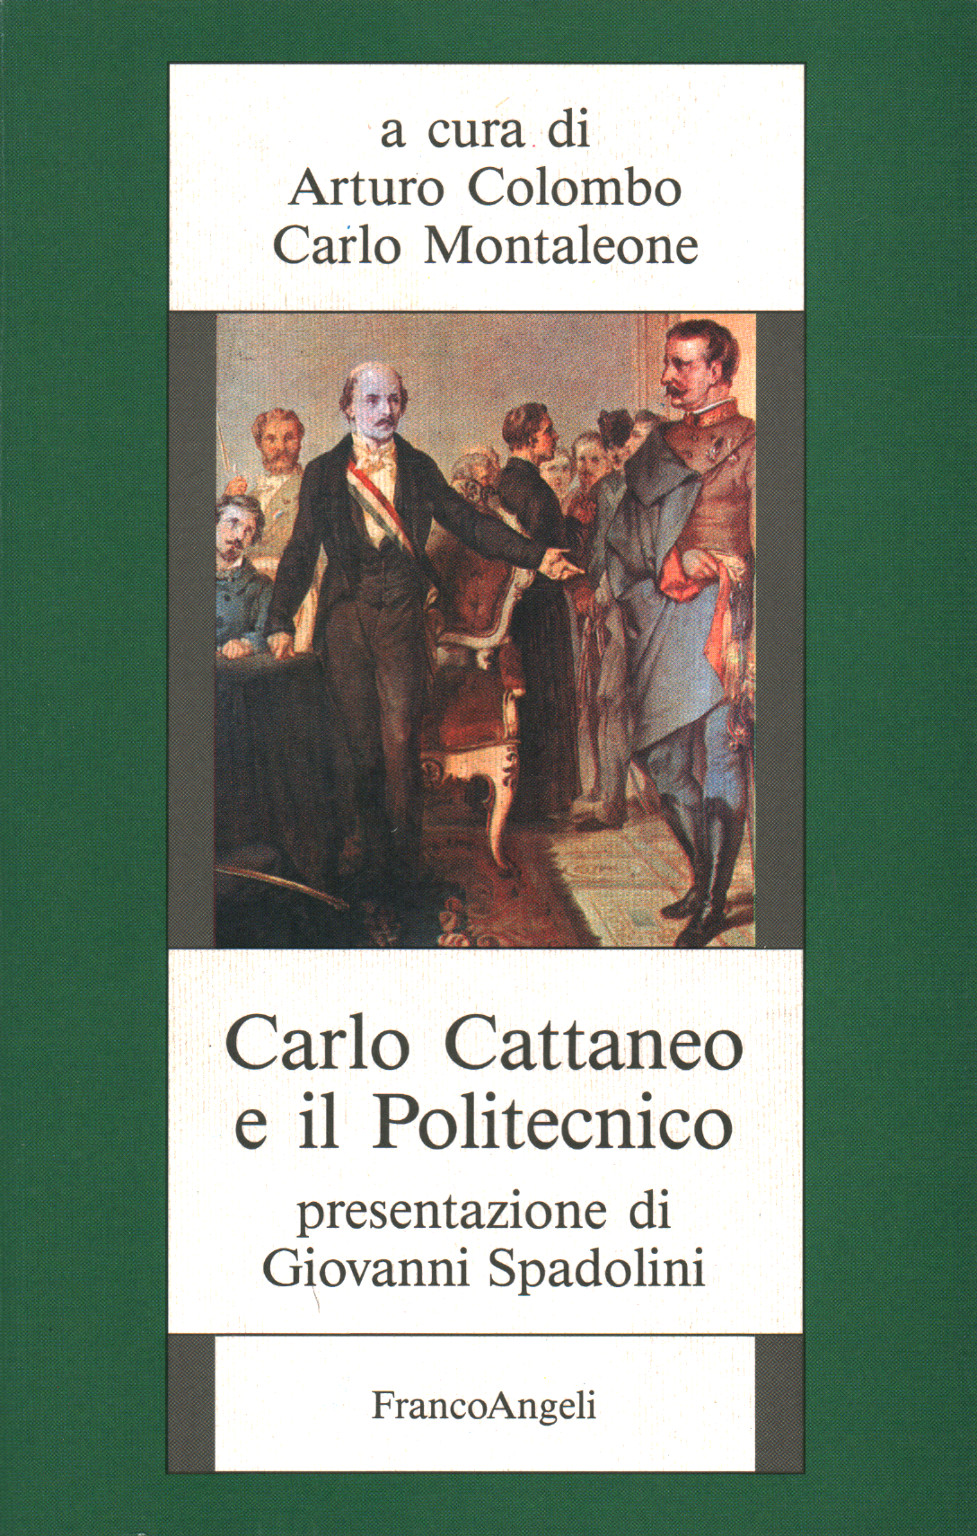 Carlo Cattaneo et l'École Polytechnique, Arturo Colombo Carlo Montaleone